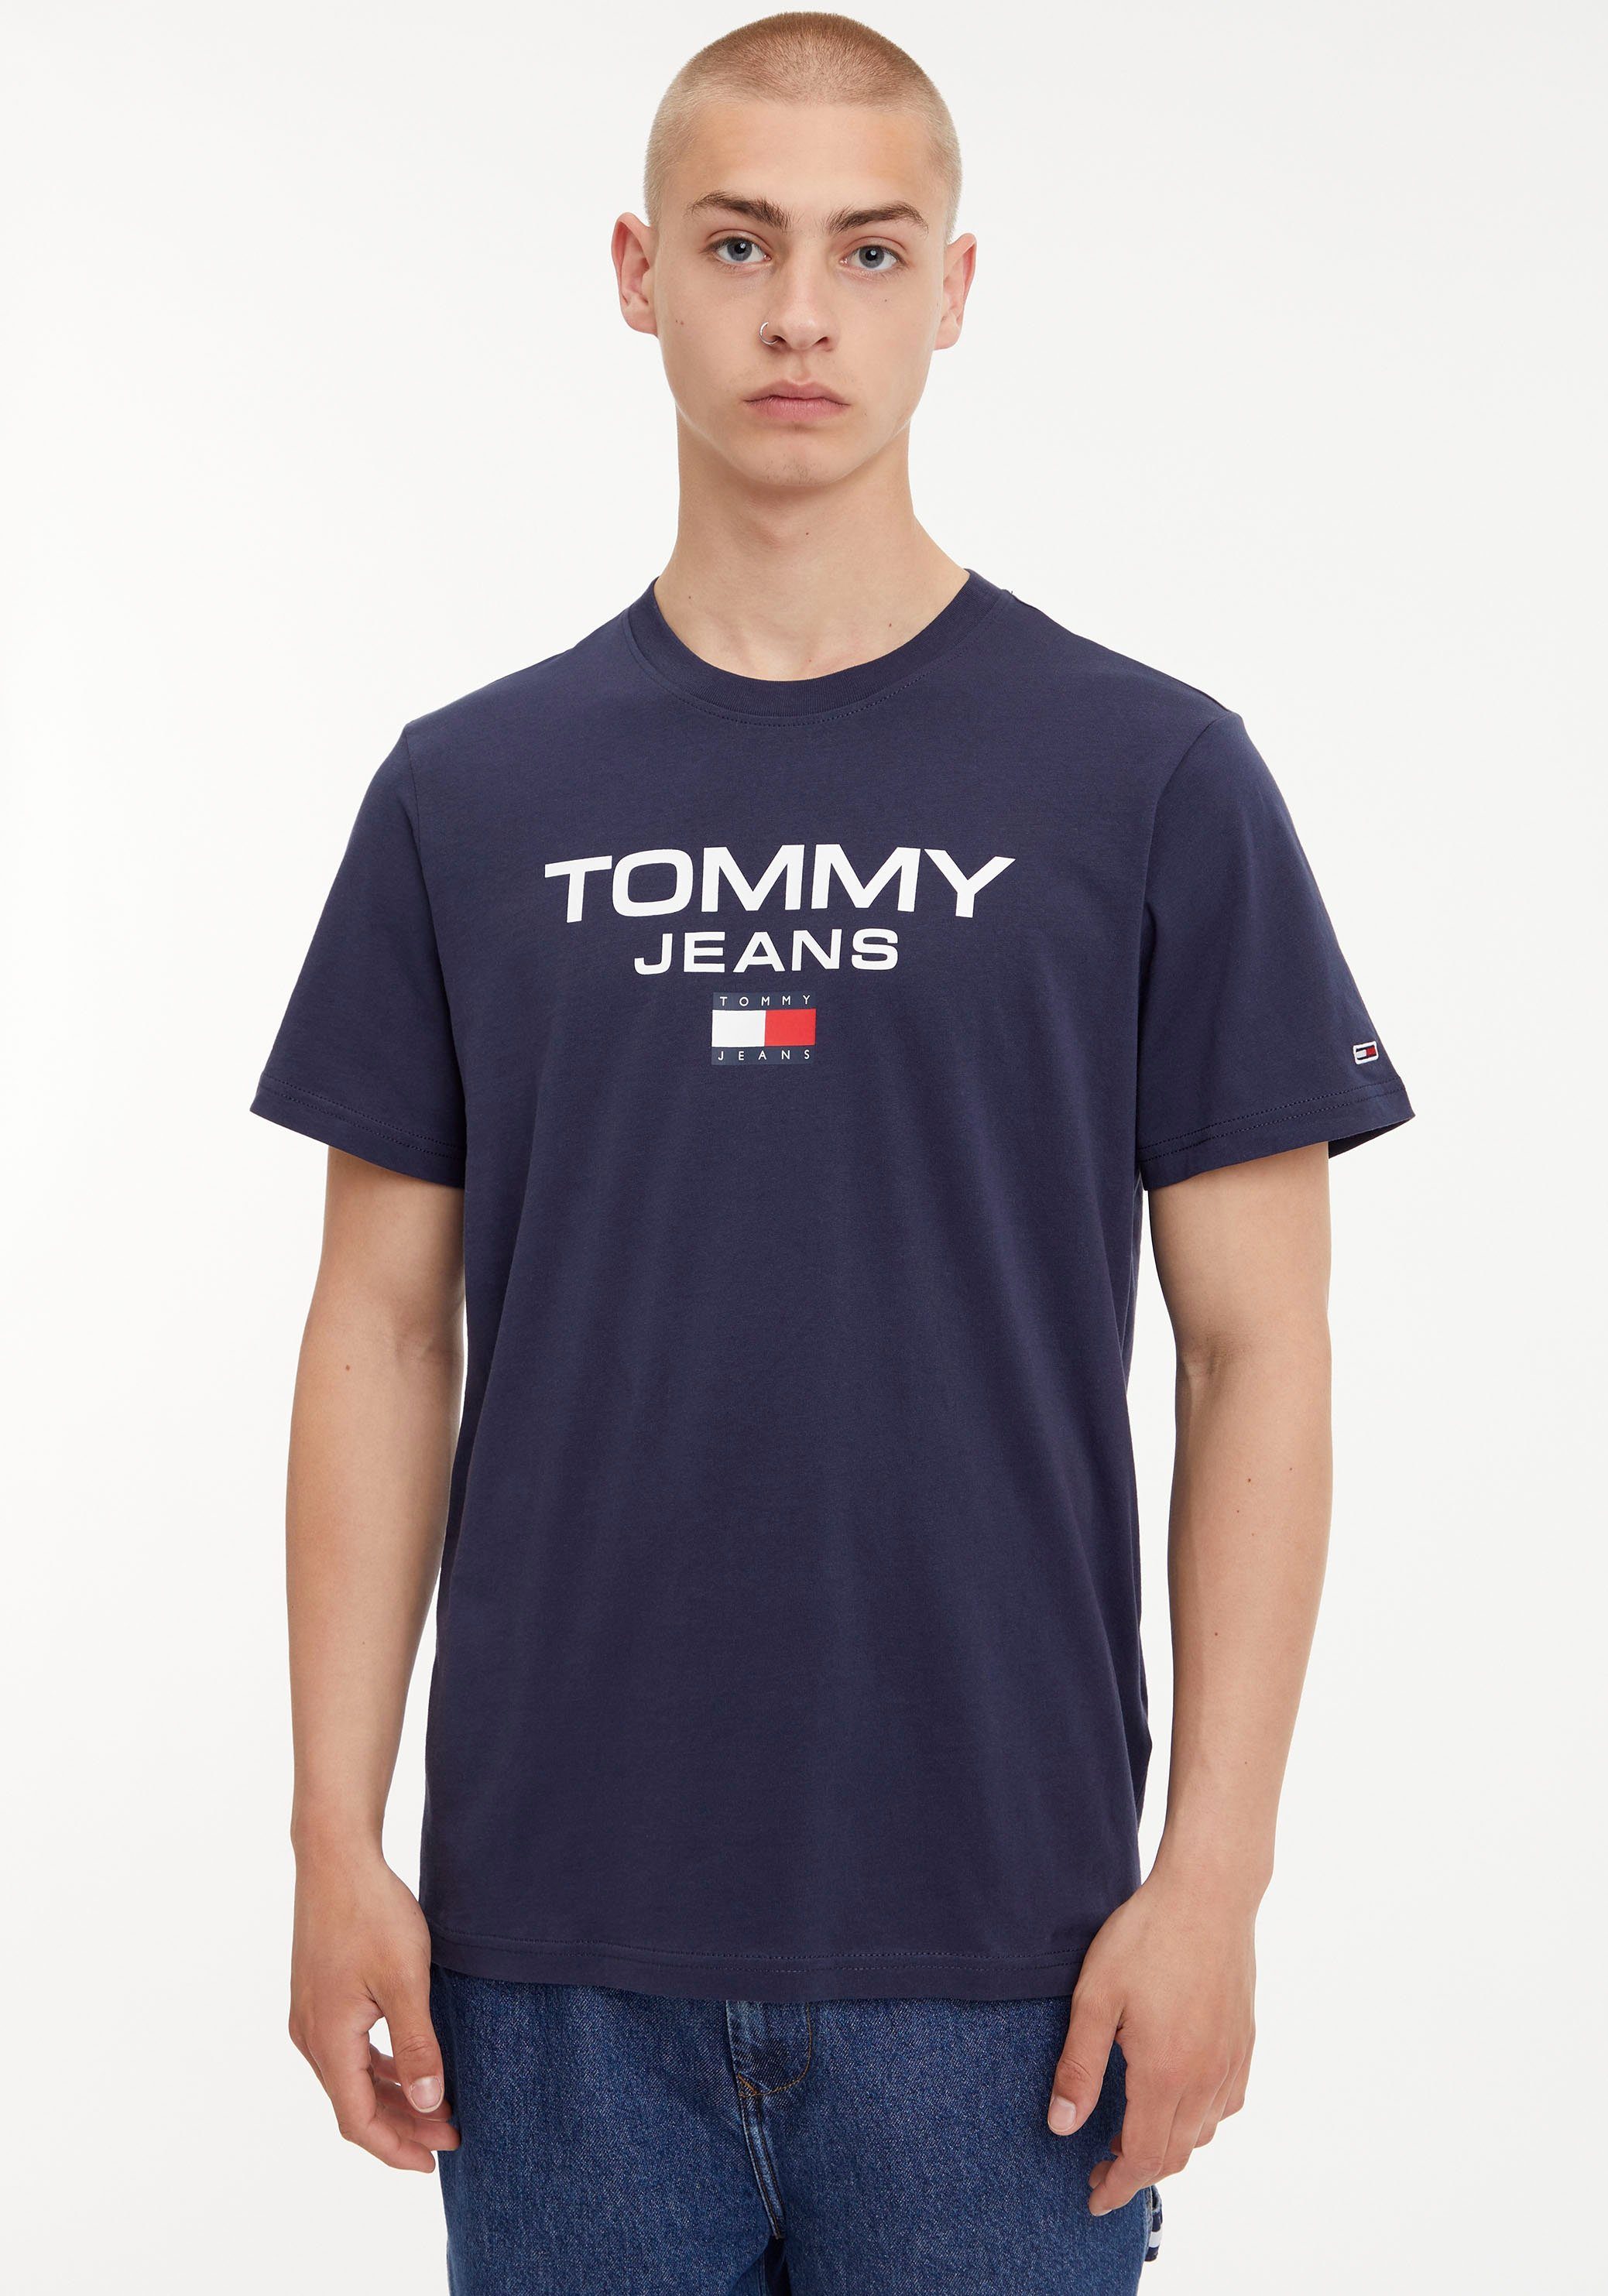 Tommy Jeans Herren Shirts online kaufen | OTTO